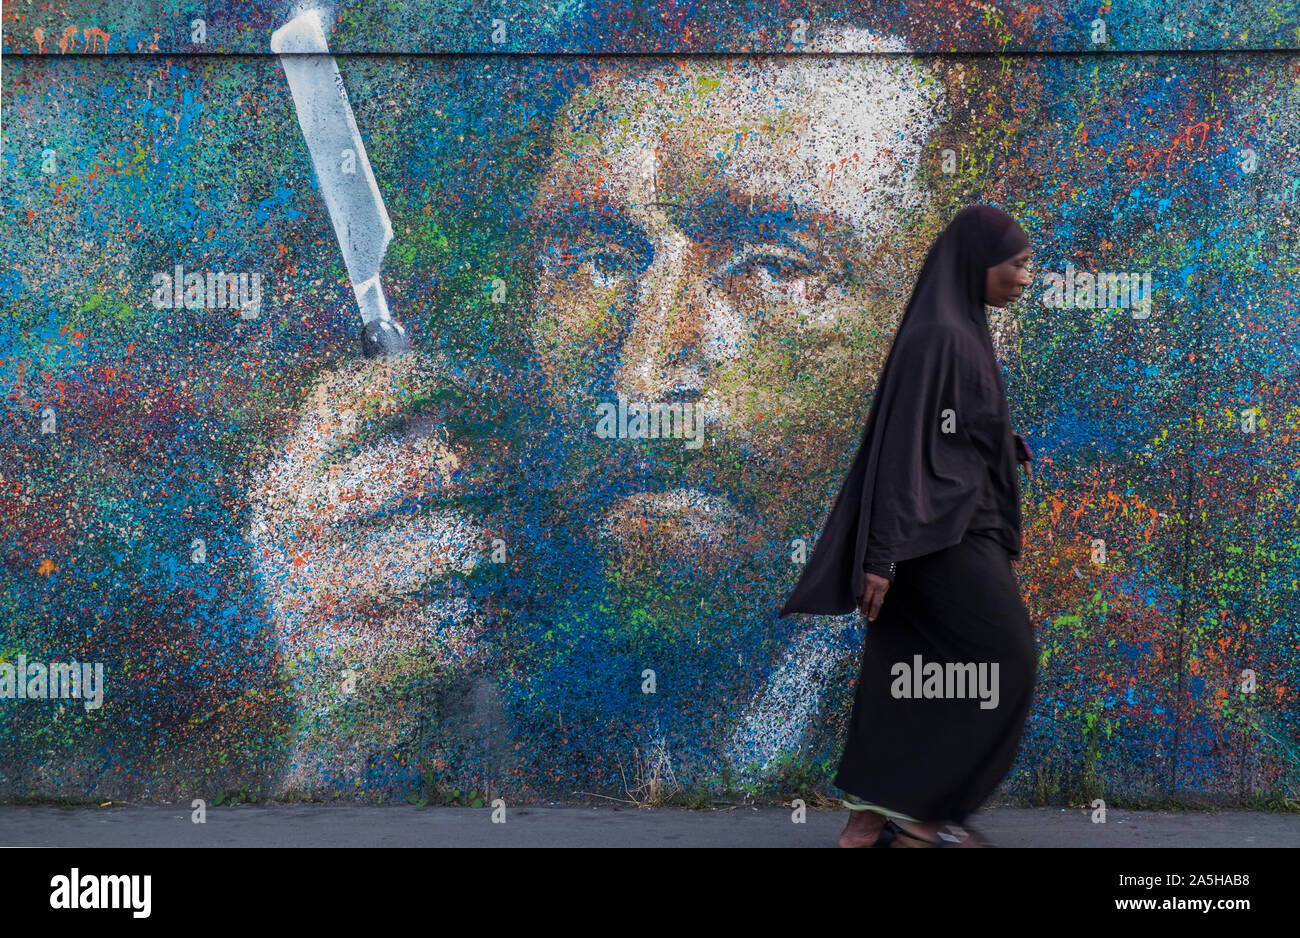 Scène de rue à l'avant du graffito montrant Vincent van Gogh tenant une lame de rasoir Banque D'Images